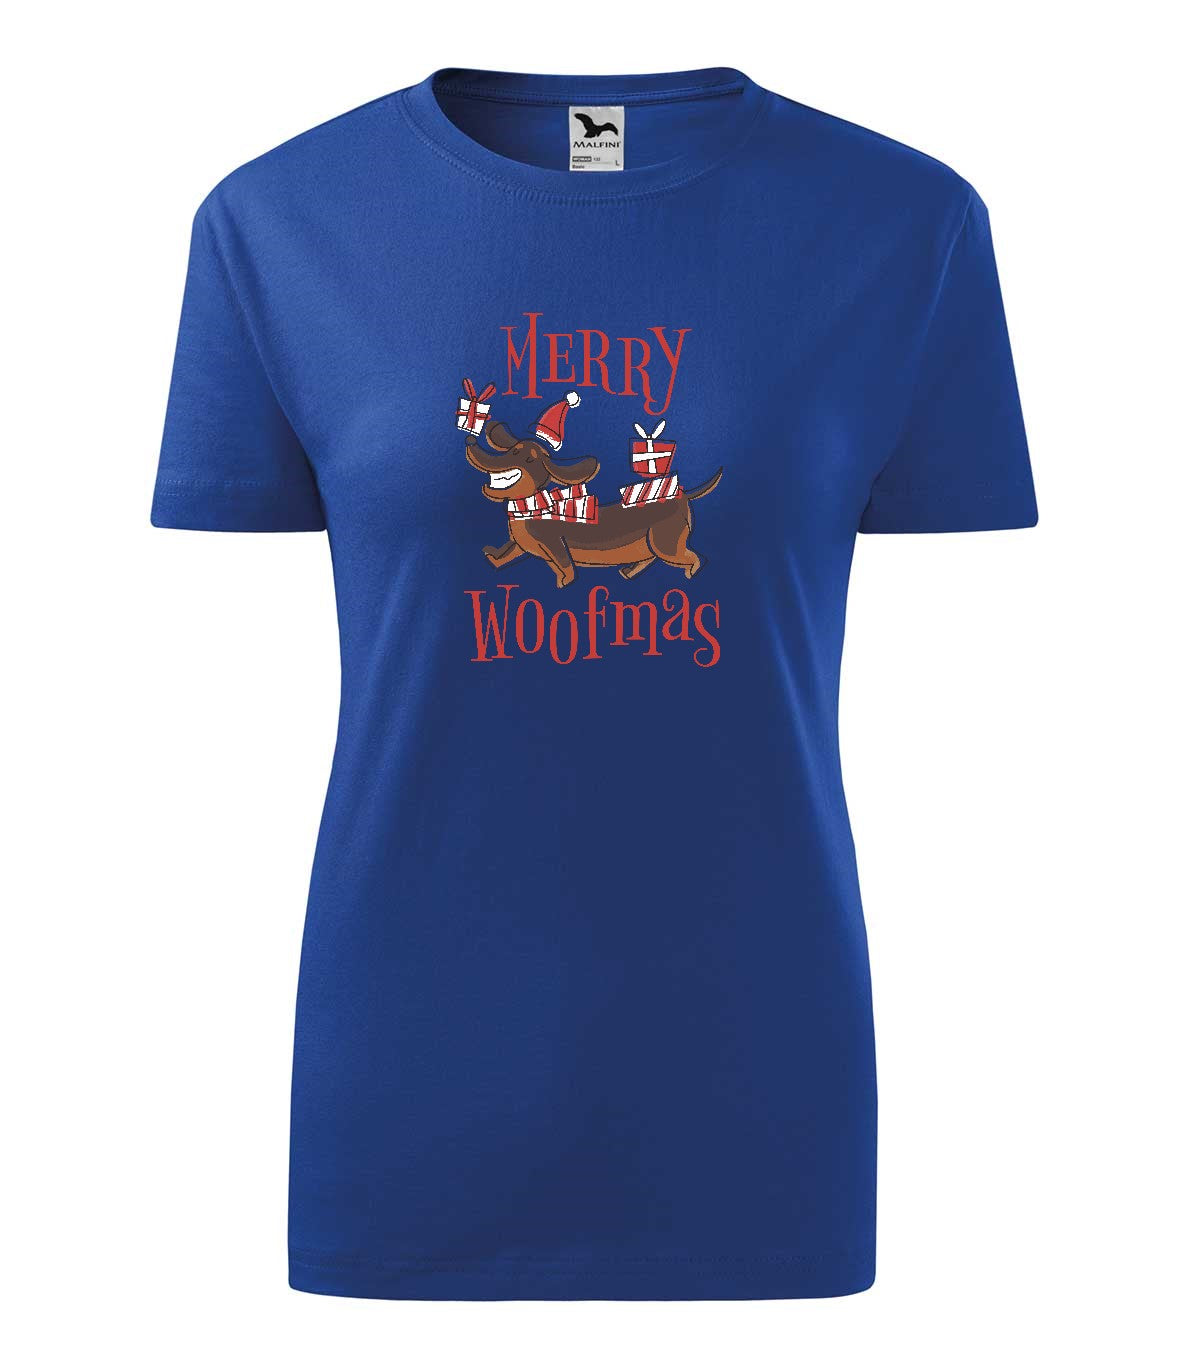 Merry Woofmas női technikai póló